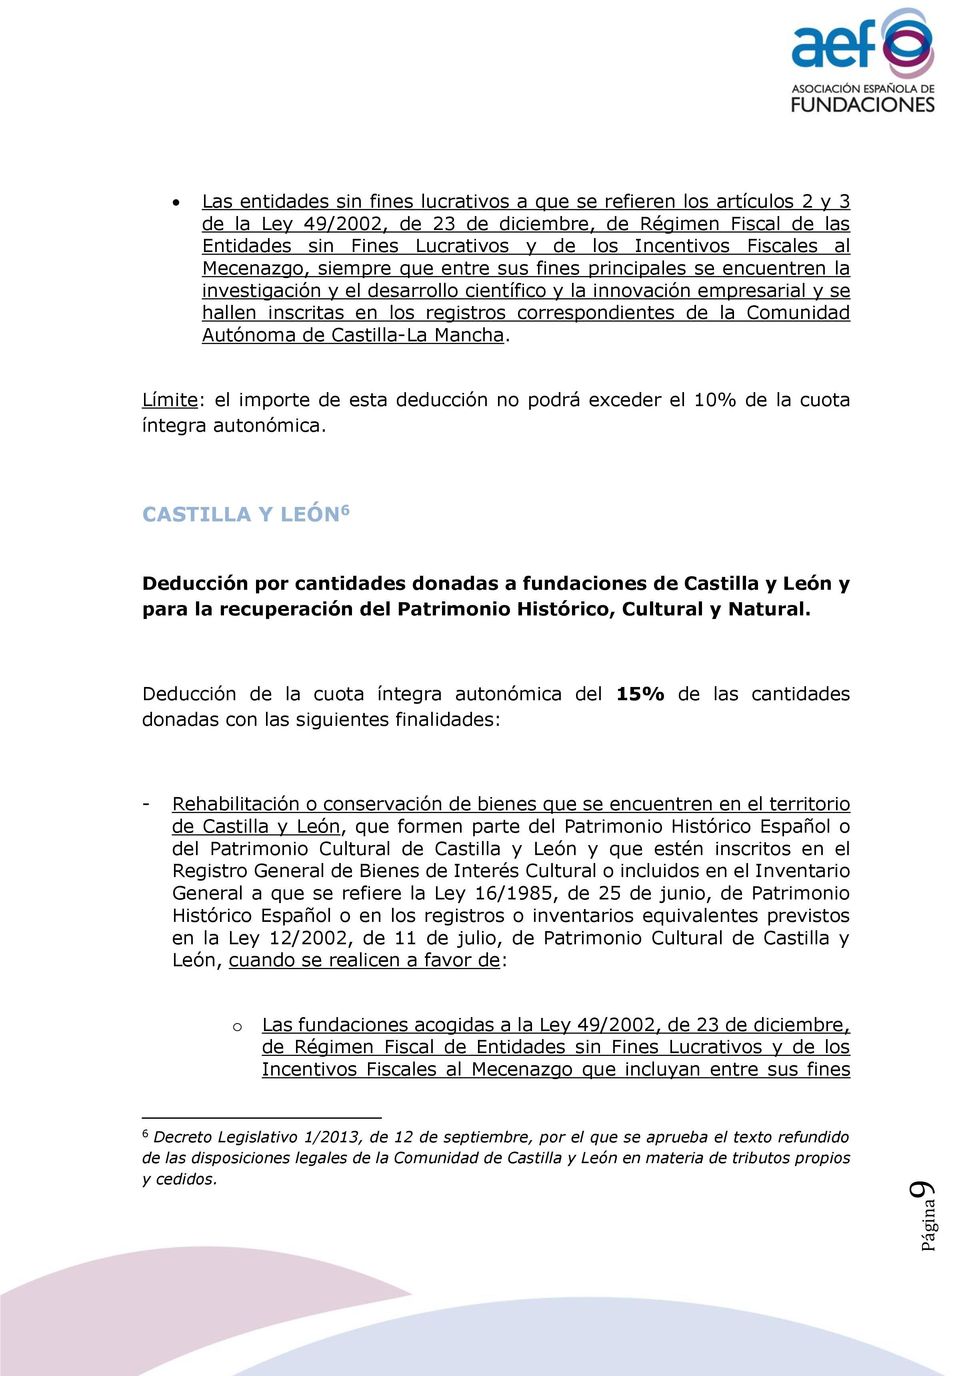 Comunidad Autónoma de Castilla-La Mancha. Límite: el importe de esta deducción no podrá exceder el 10% de la cuota íntegra autonómica.